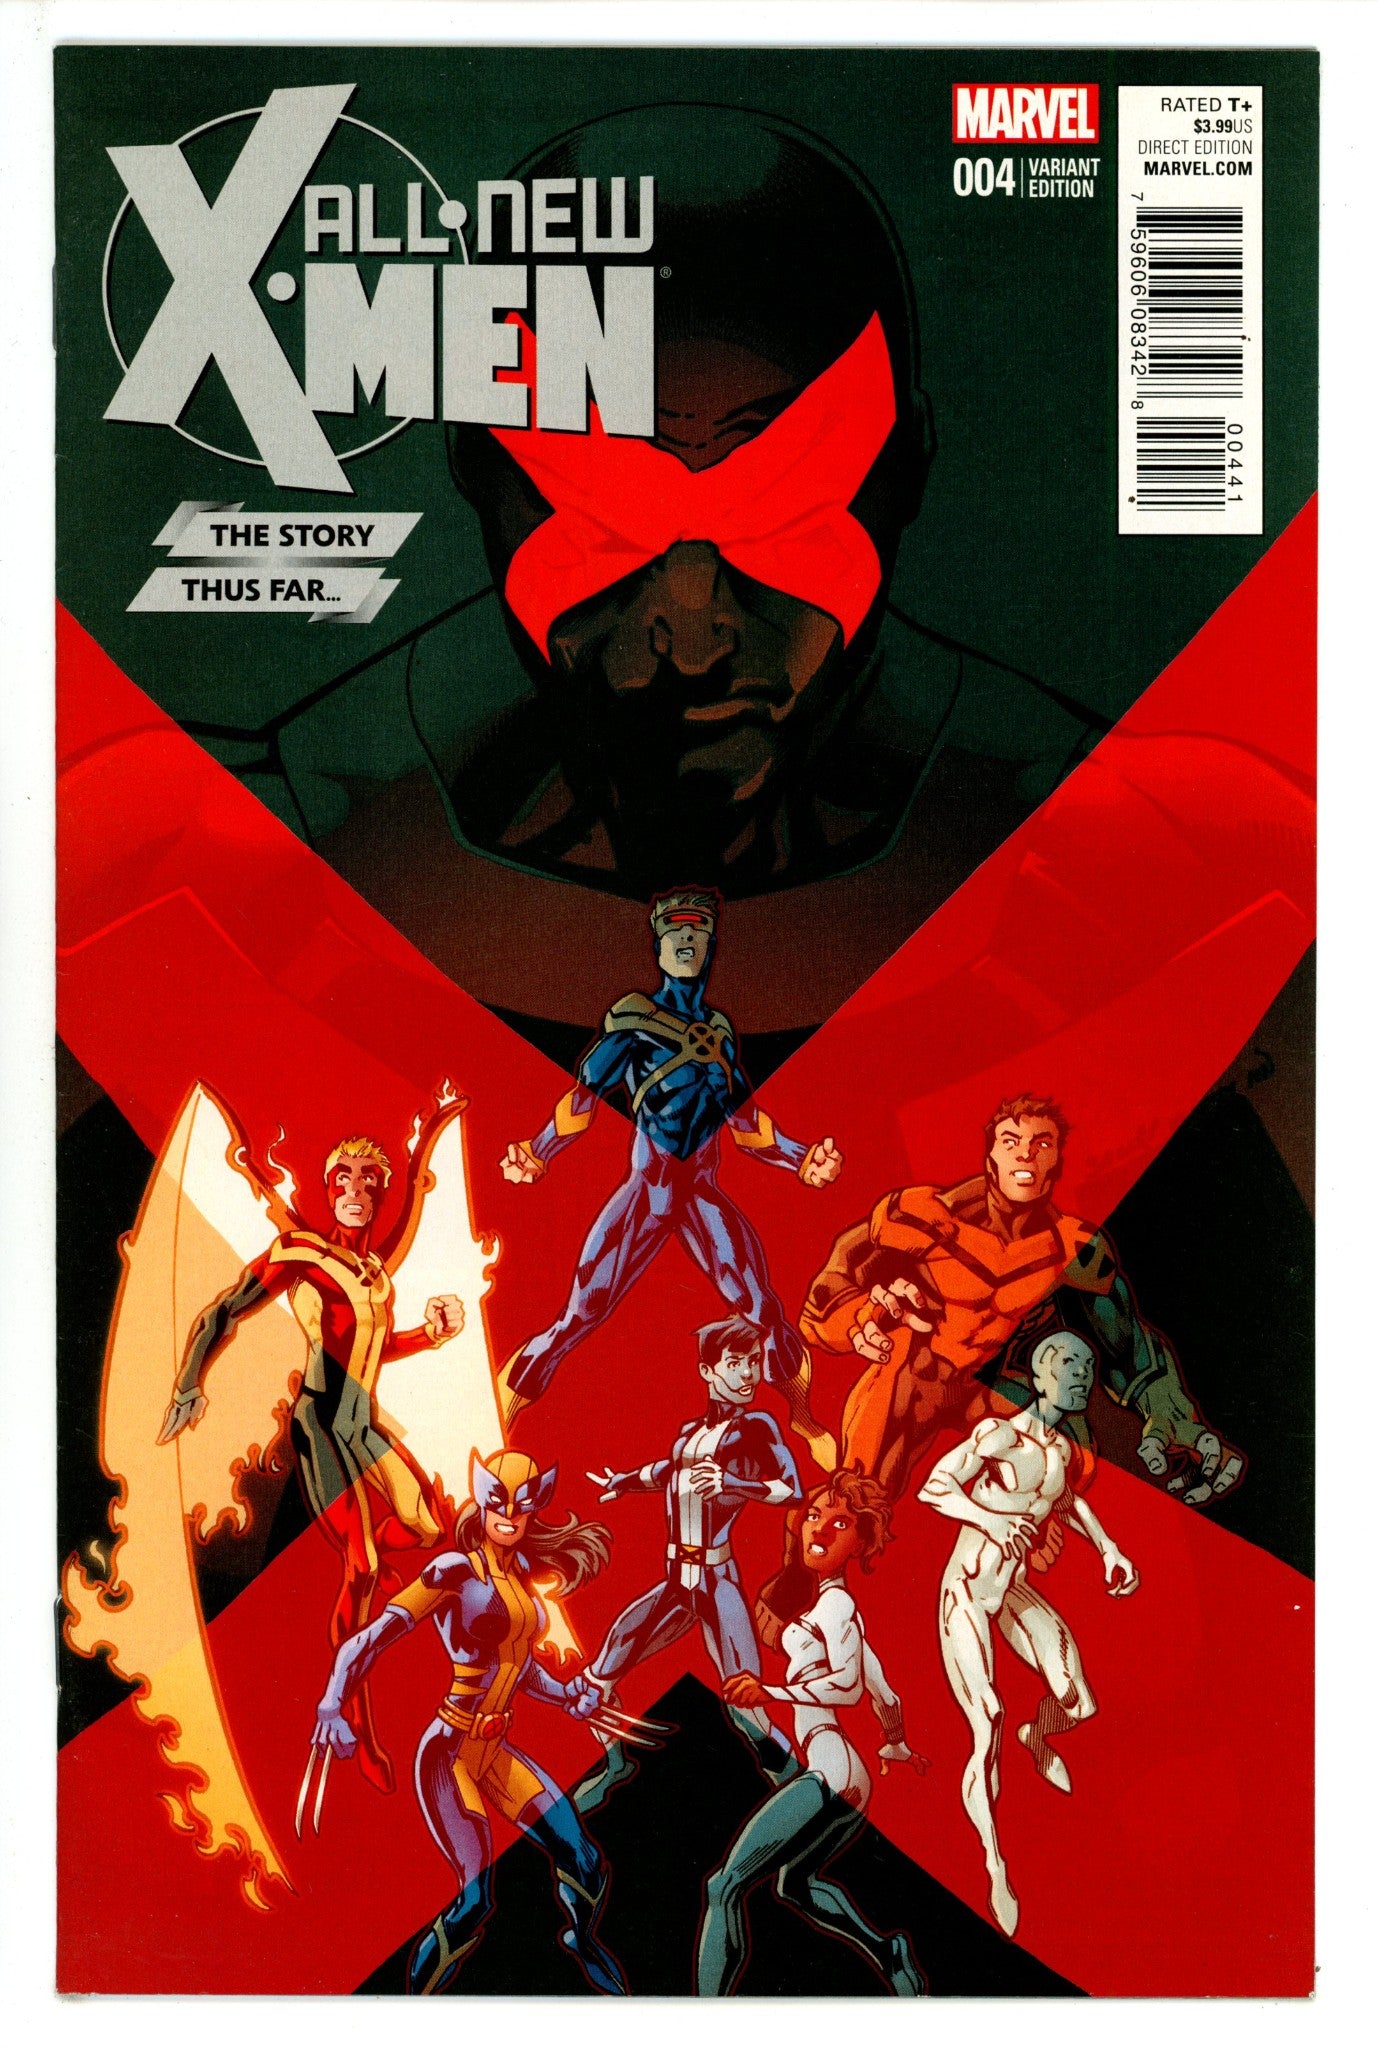 All-New X-Men Vol 2 4 High Grade (2016) Bagley Incentive Variant 